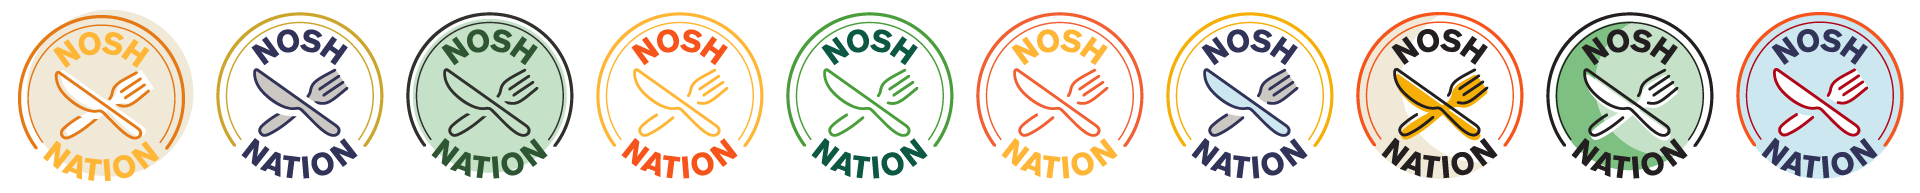 Nosh Nation Logo color variations